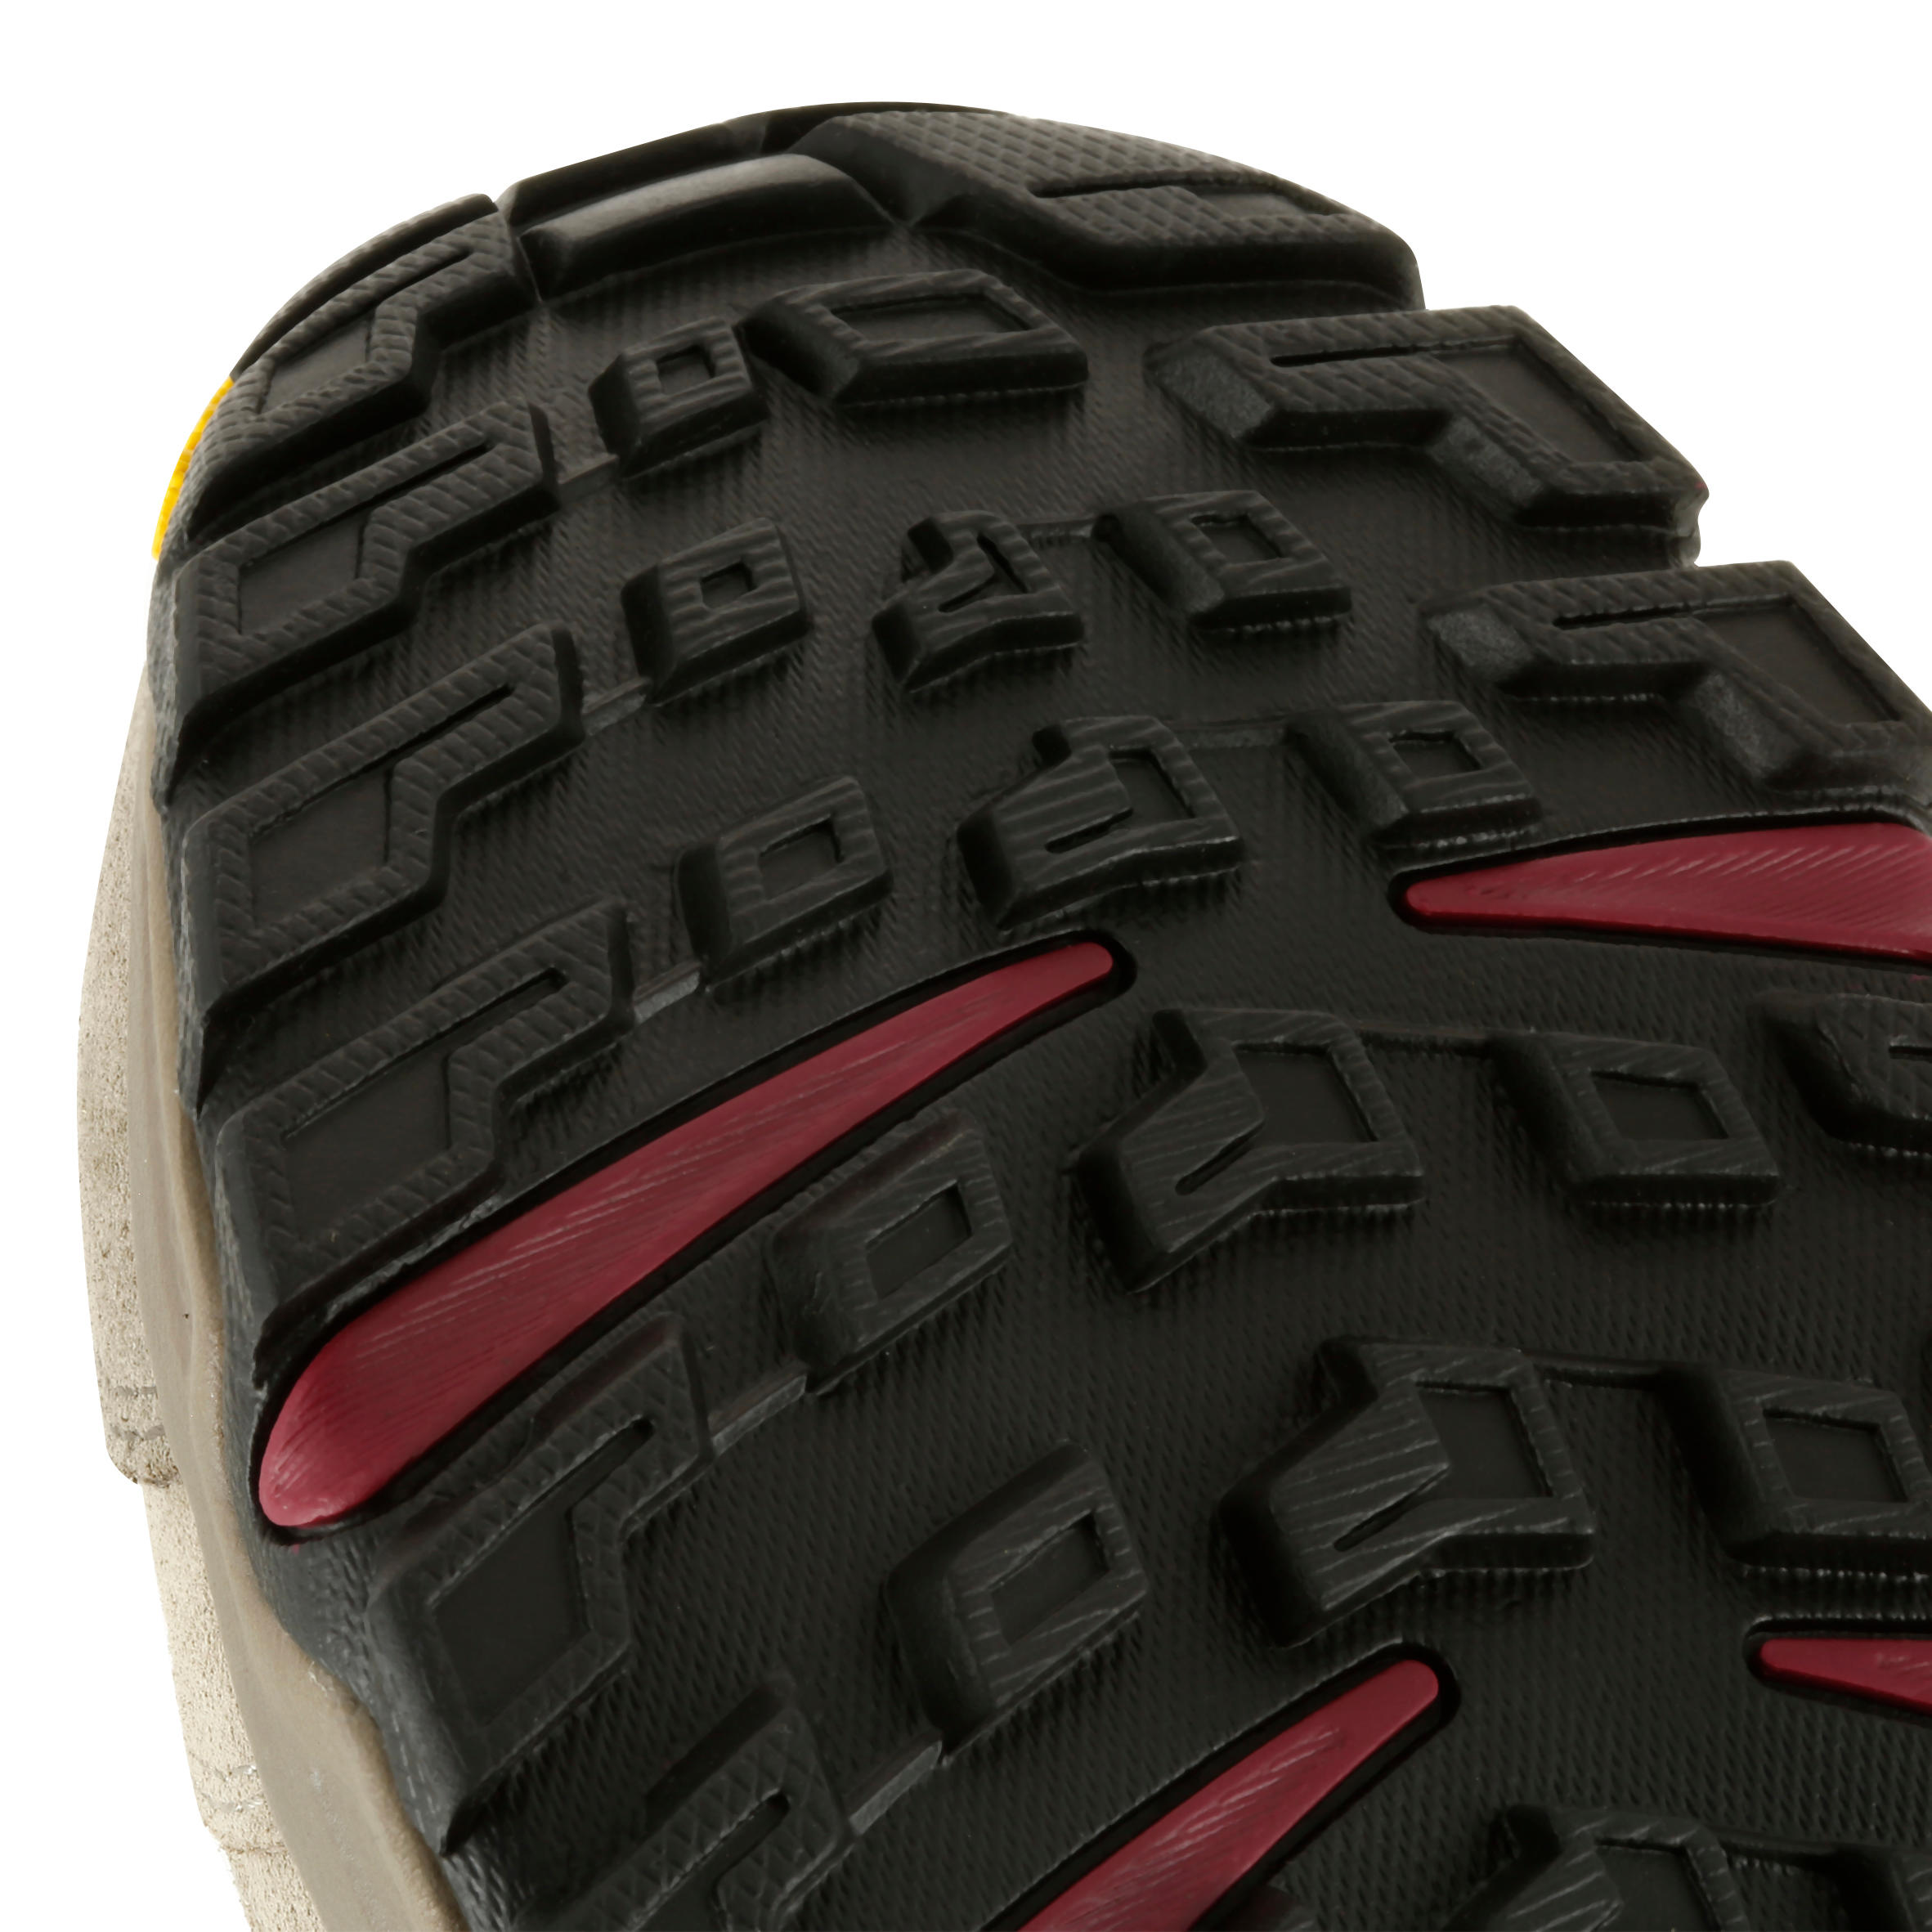 Waterproof Trekking Shoes - GORETEX - VIBRAM-TECNICA STARCROSS - W Beige 13/13